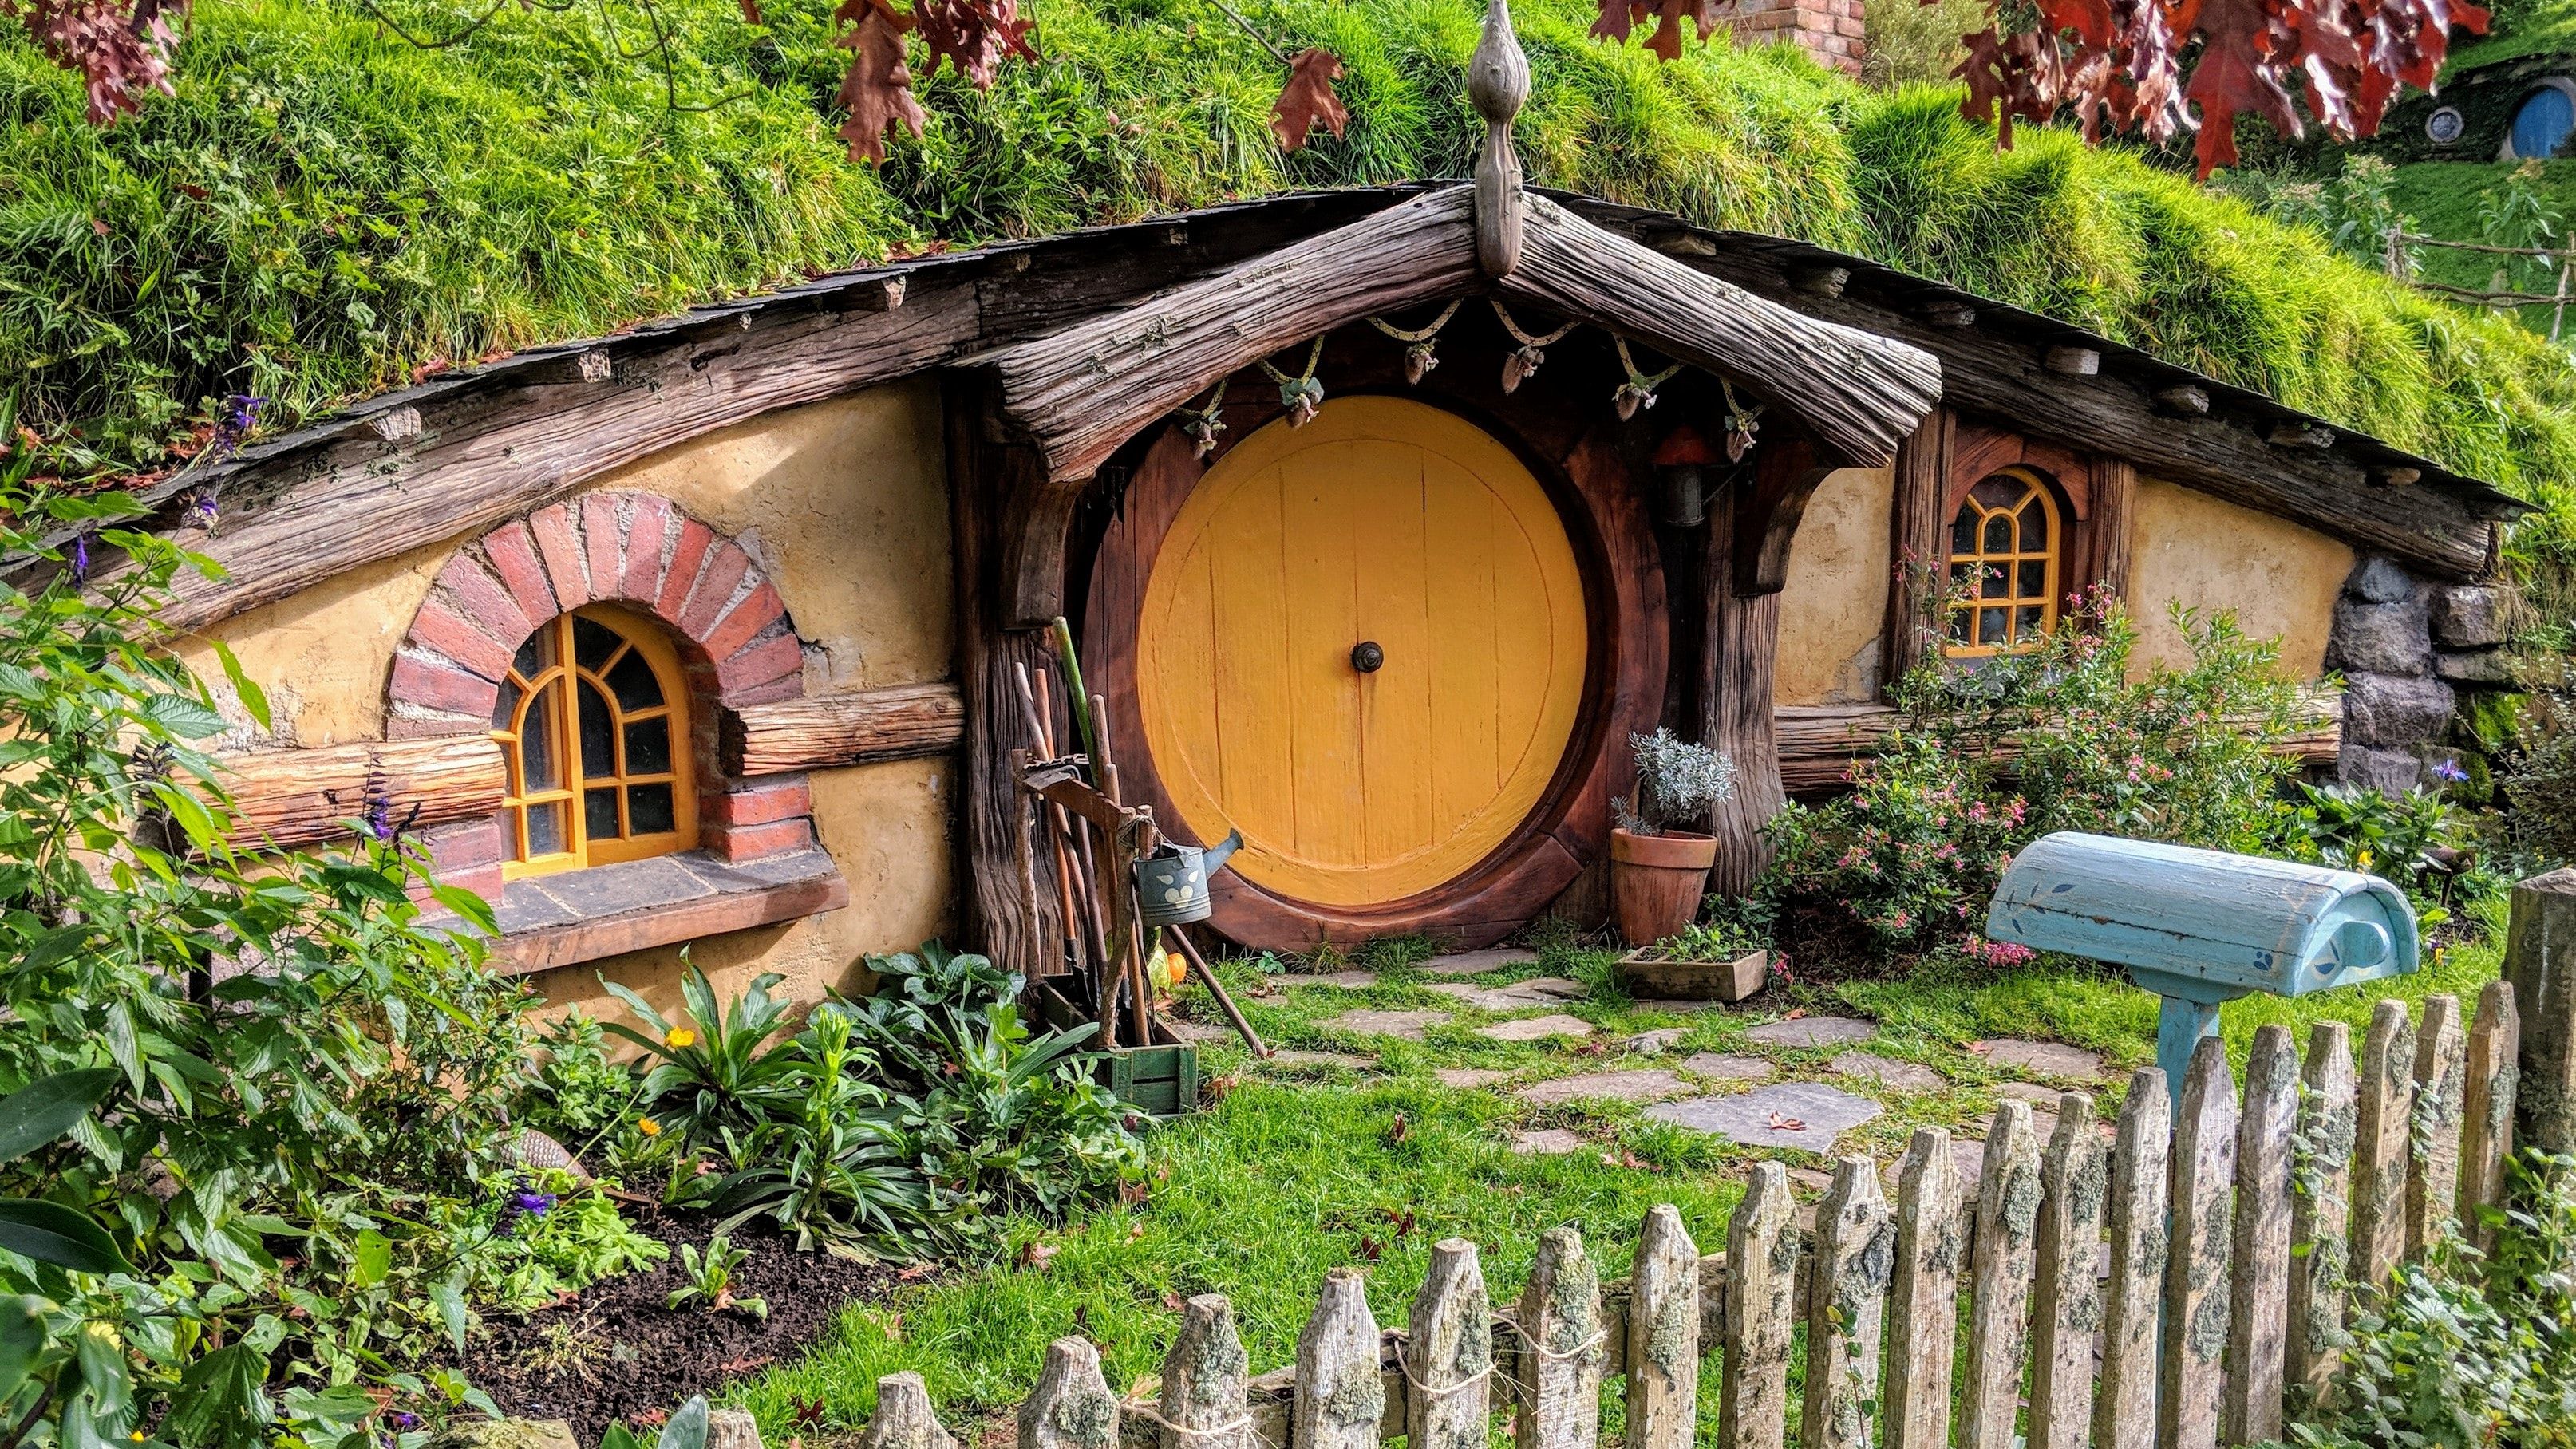 Hobbit hole in Hobbiton New Zealand